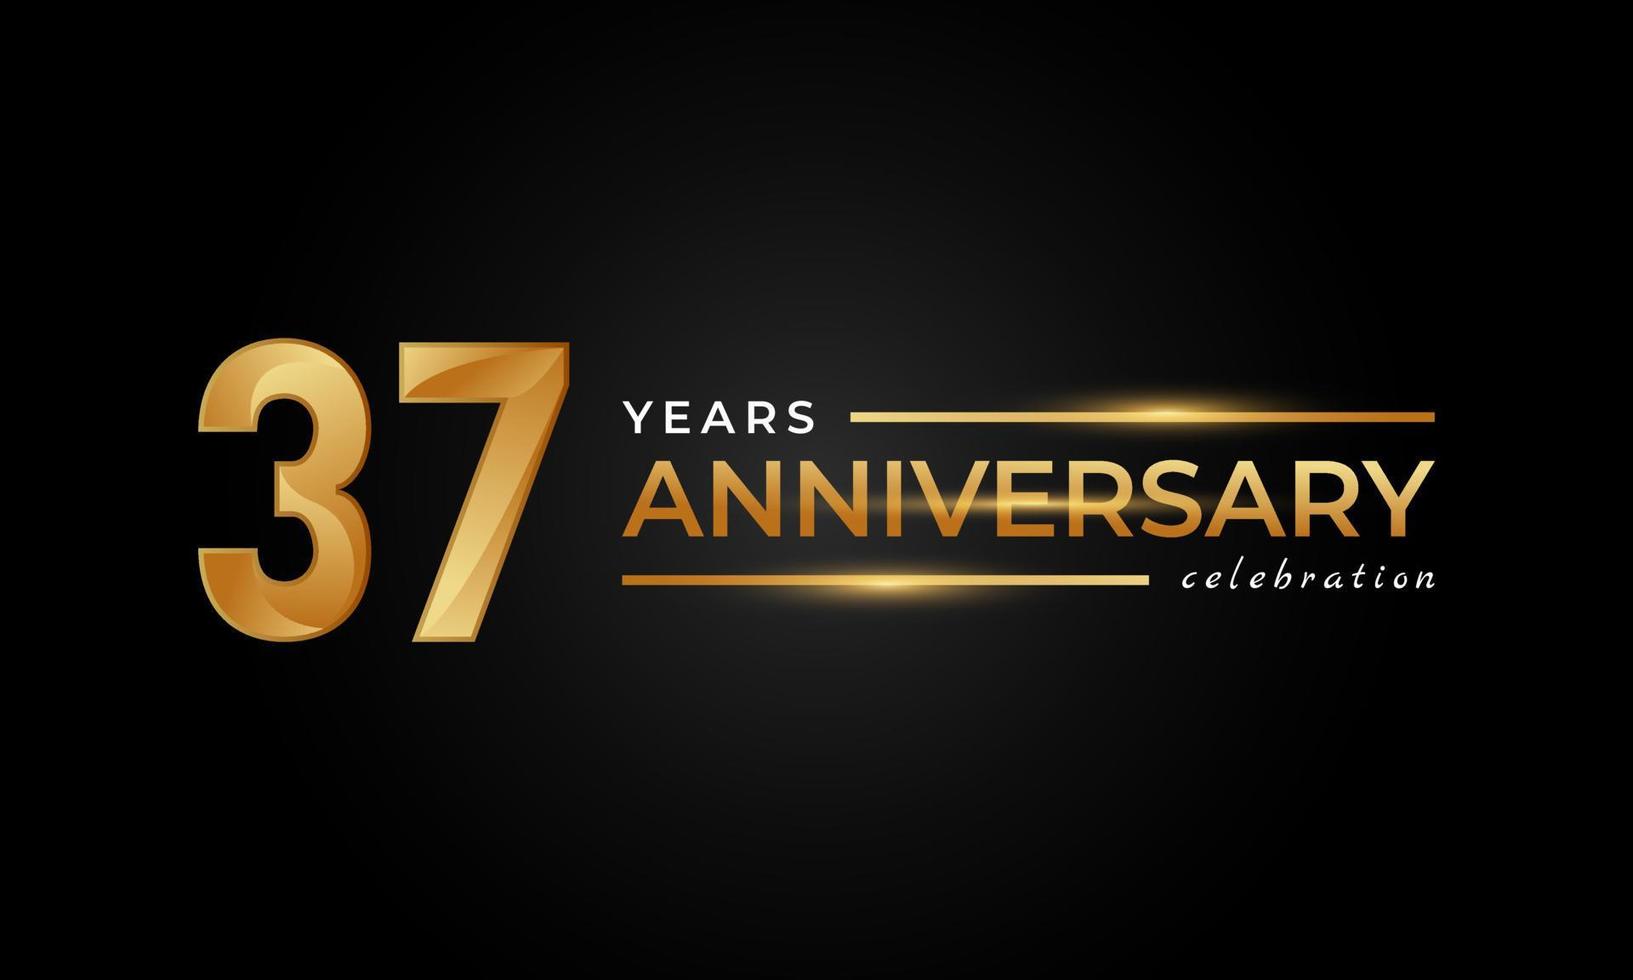 37-jährige Jubiläumsfeier mit glänzender goldener und silberner Farbe für Feierlichkeiten, Hochzeiten, Grußkarten und Einladungen einzeln auf schwarzem Hintergrund vektor